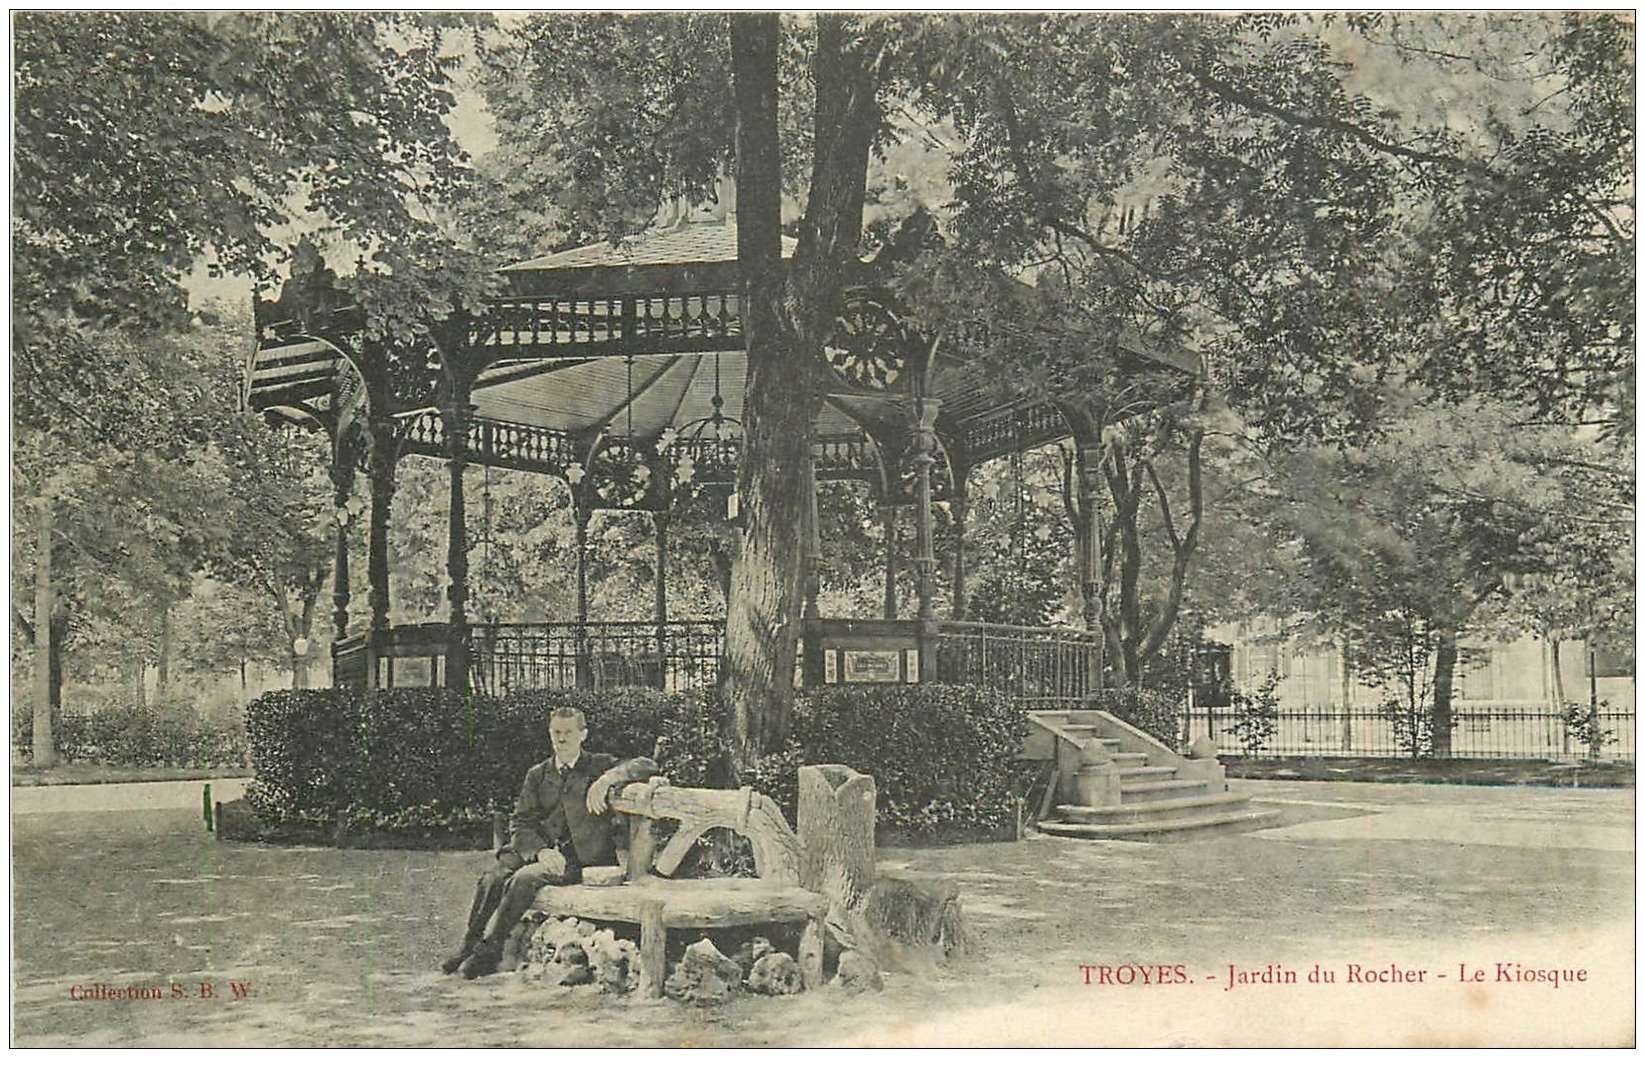 10 TROYES. Kiosque au Jardin du rocher 1905. Personnage assis